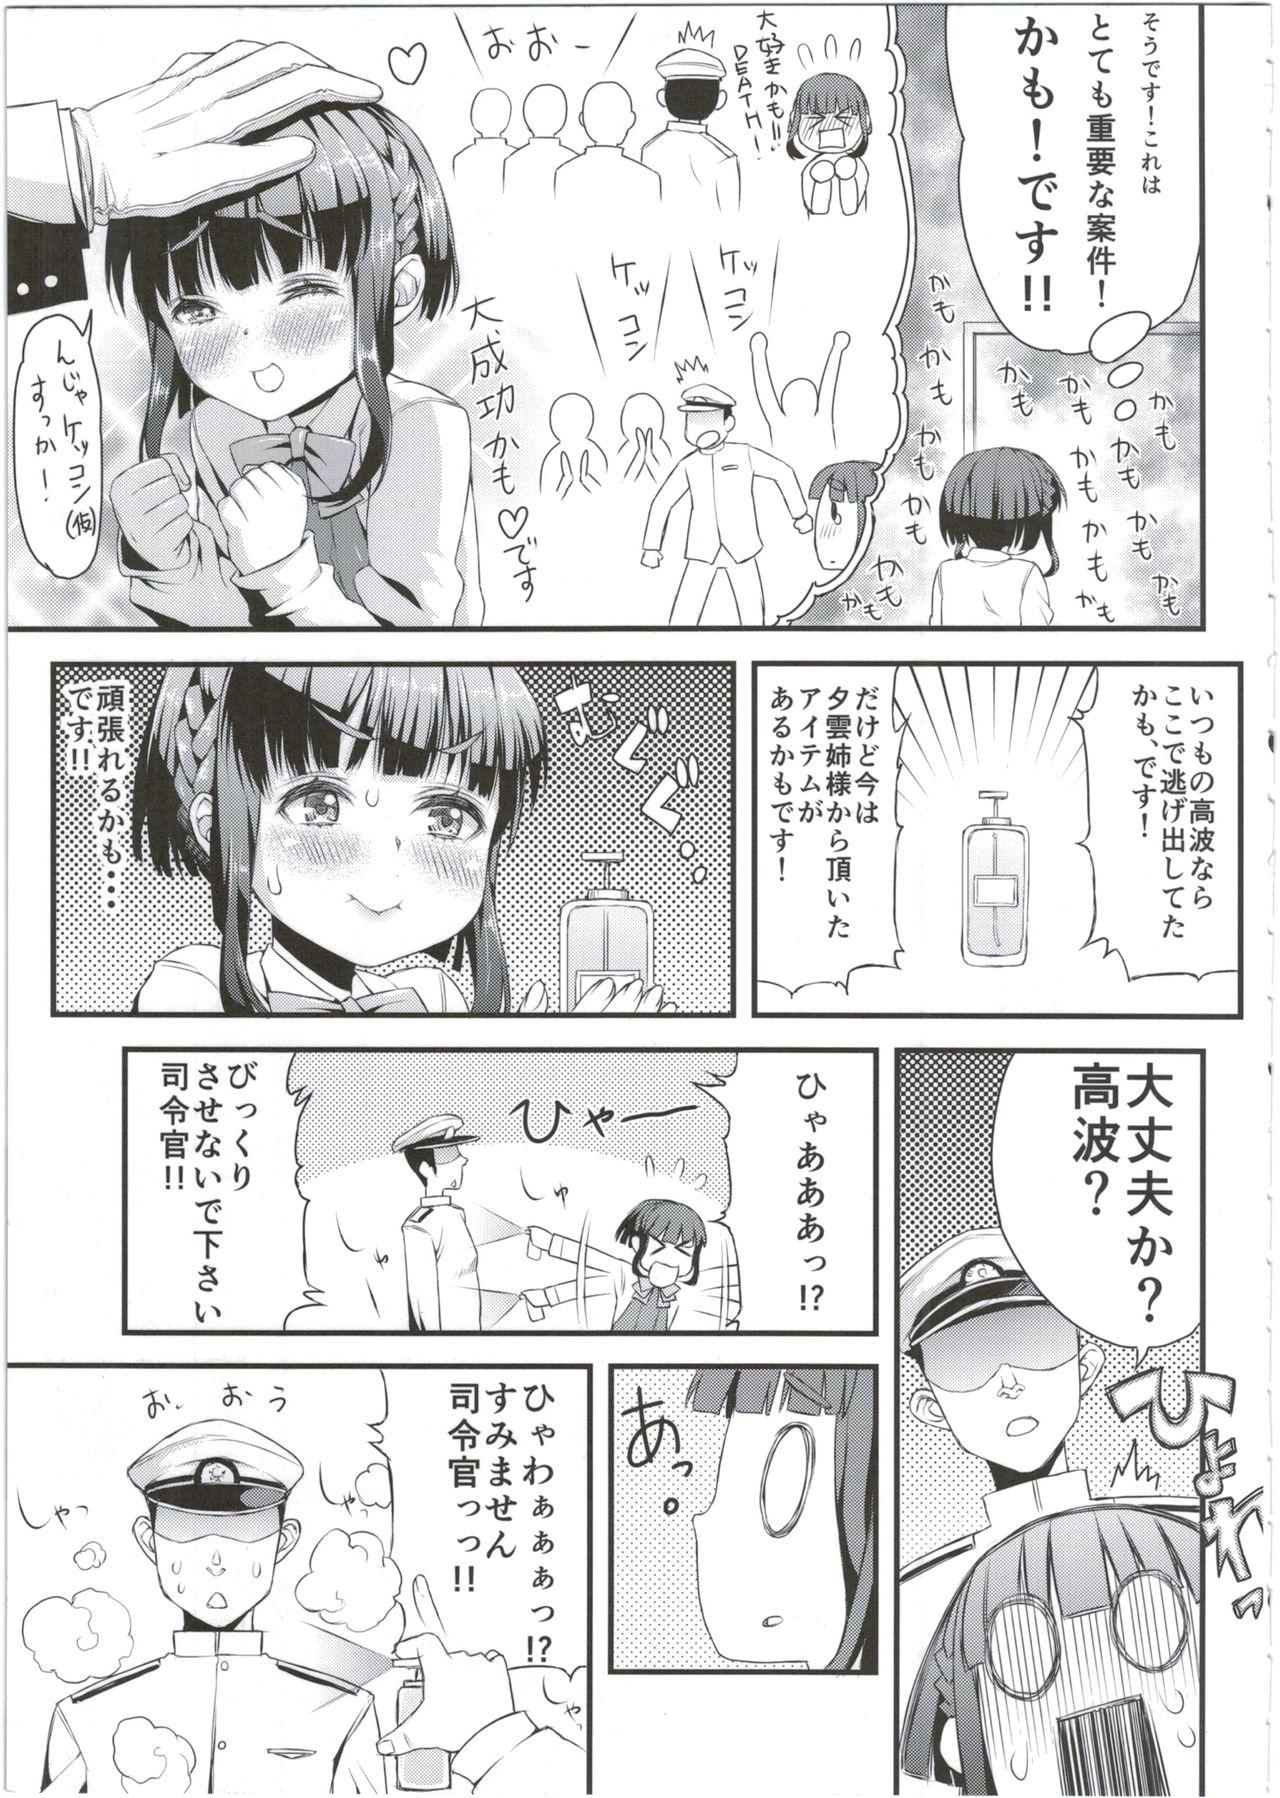 Bribe Takanami-chan wa Ganbatta kamo. desu! - Kantai collection Storyline - Page 7